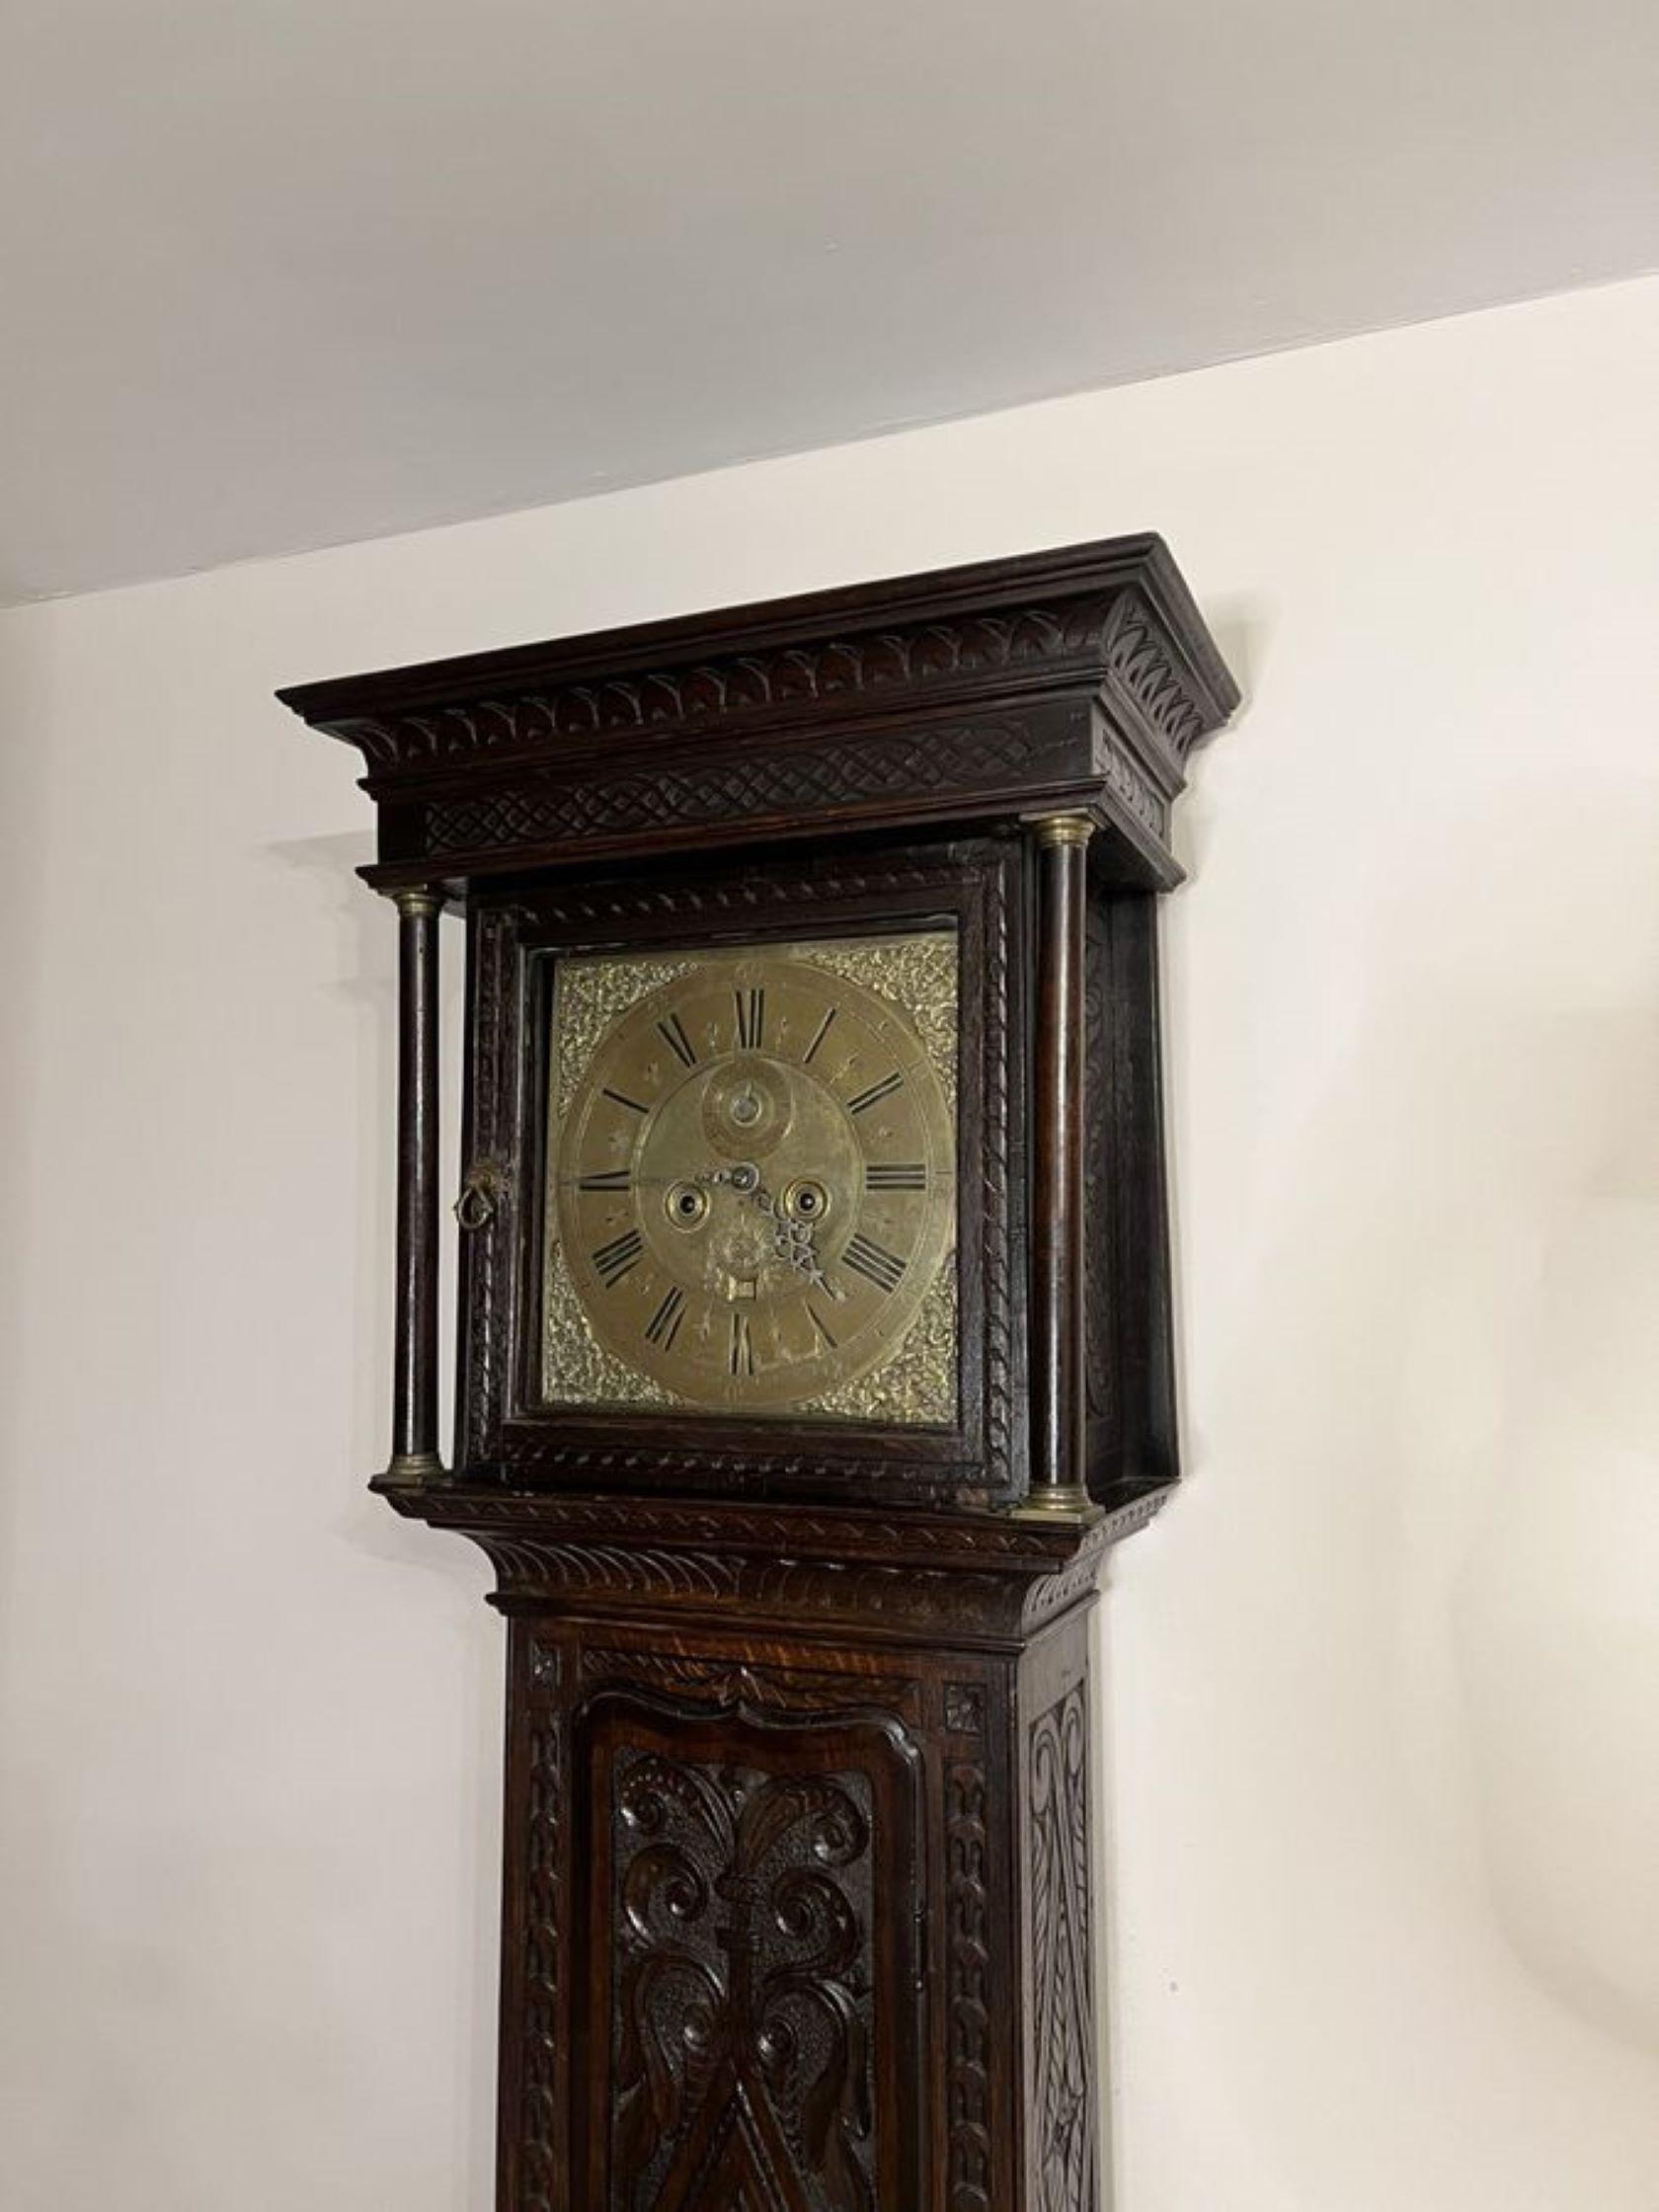 Fantastische Qualität antiken George III geschnitzt Eiche lange Fall Uhr, mit einem 8-Tage-Uhrwerk auf eine Glocke schlagen, mit einem Messing-Zifferblatt der Kapitelring beschriftet Thomas Wentworth JNR, mit einem sekundären Minutenzeiger und ein